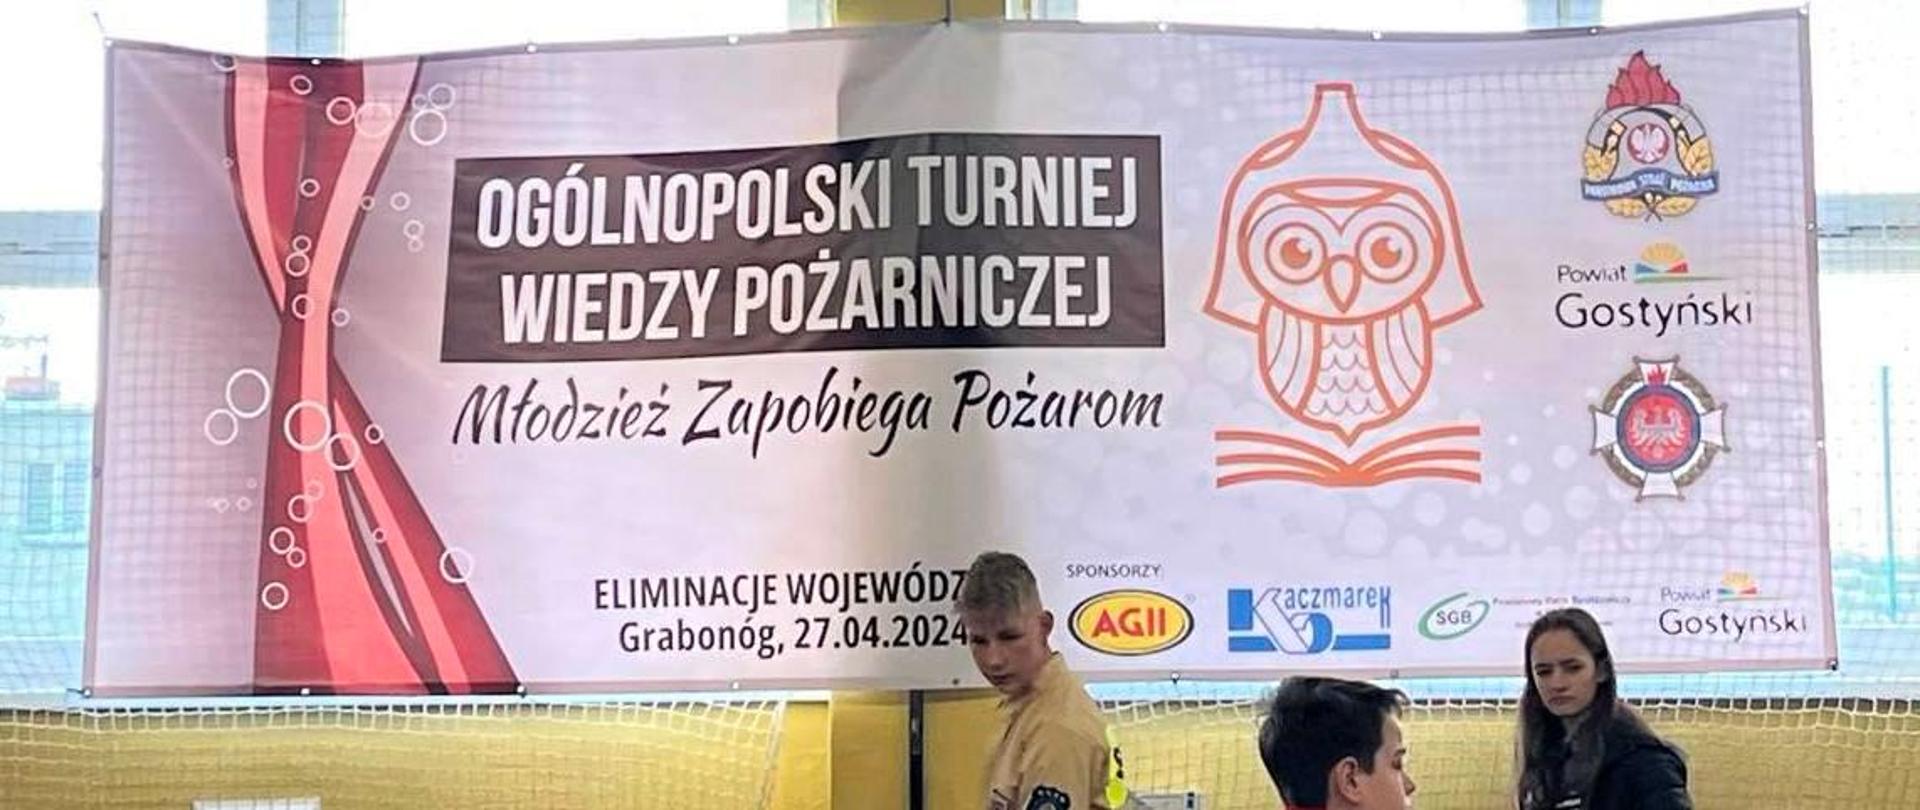 Baner z napisem Ogólnopolski Turniej Wiedzy Pożarniczej